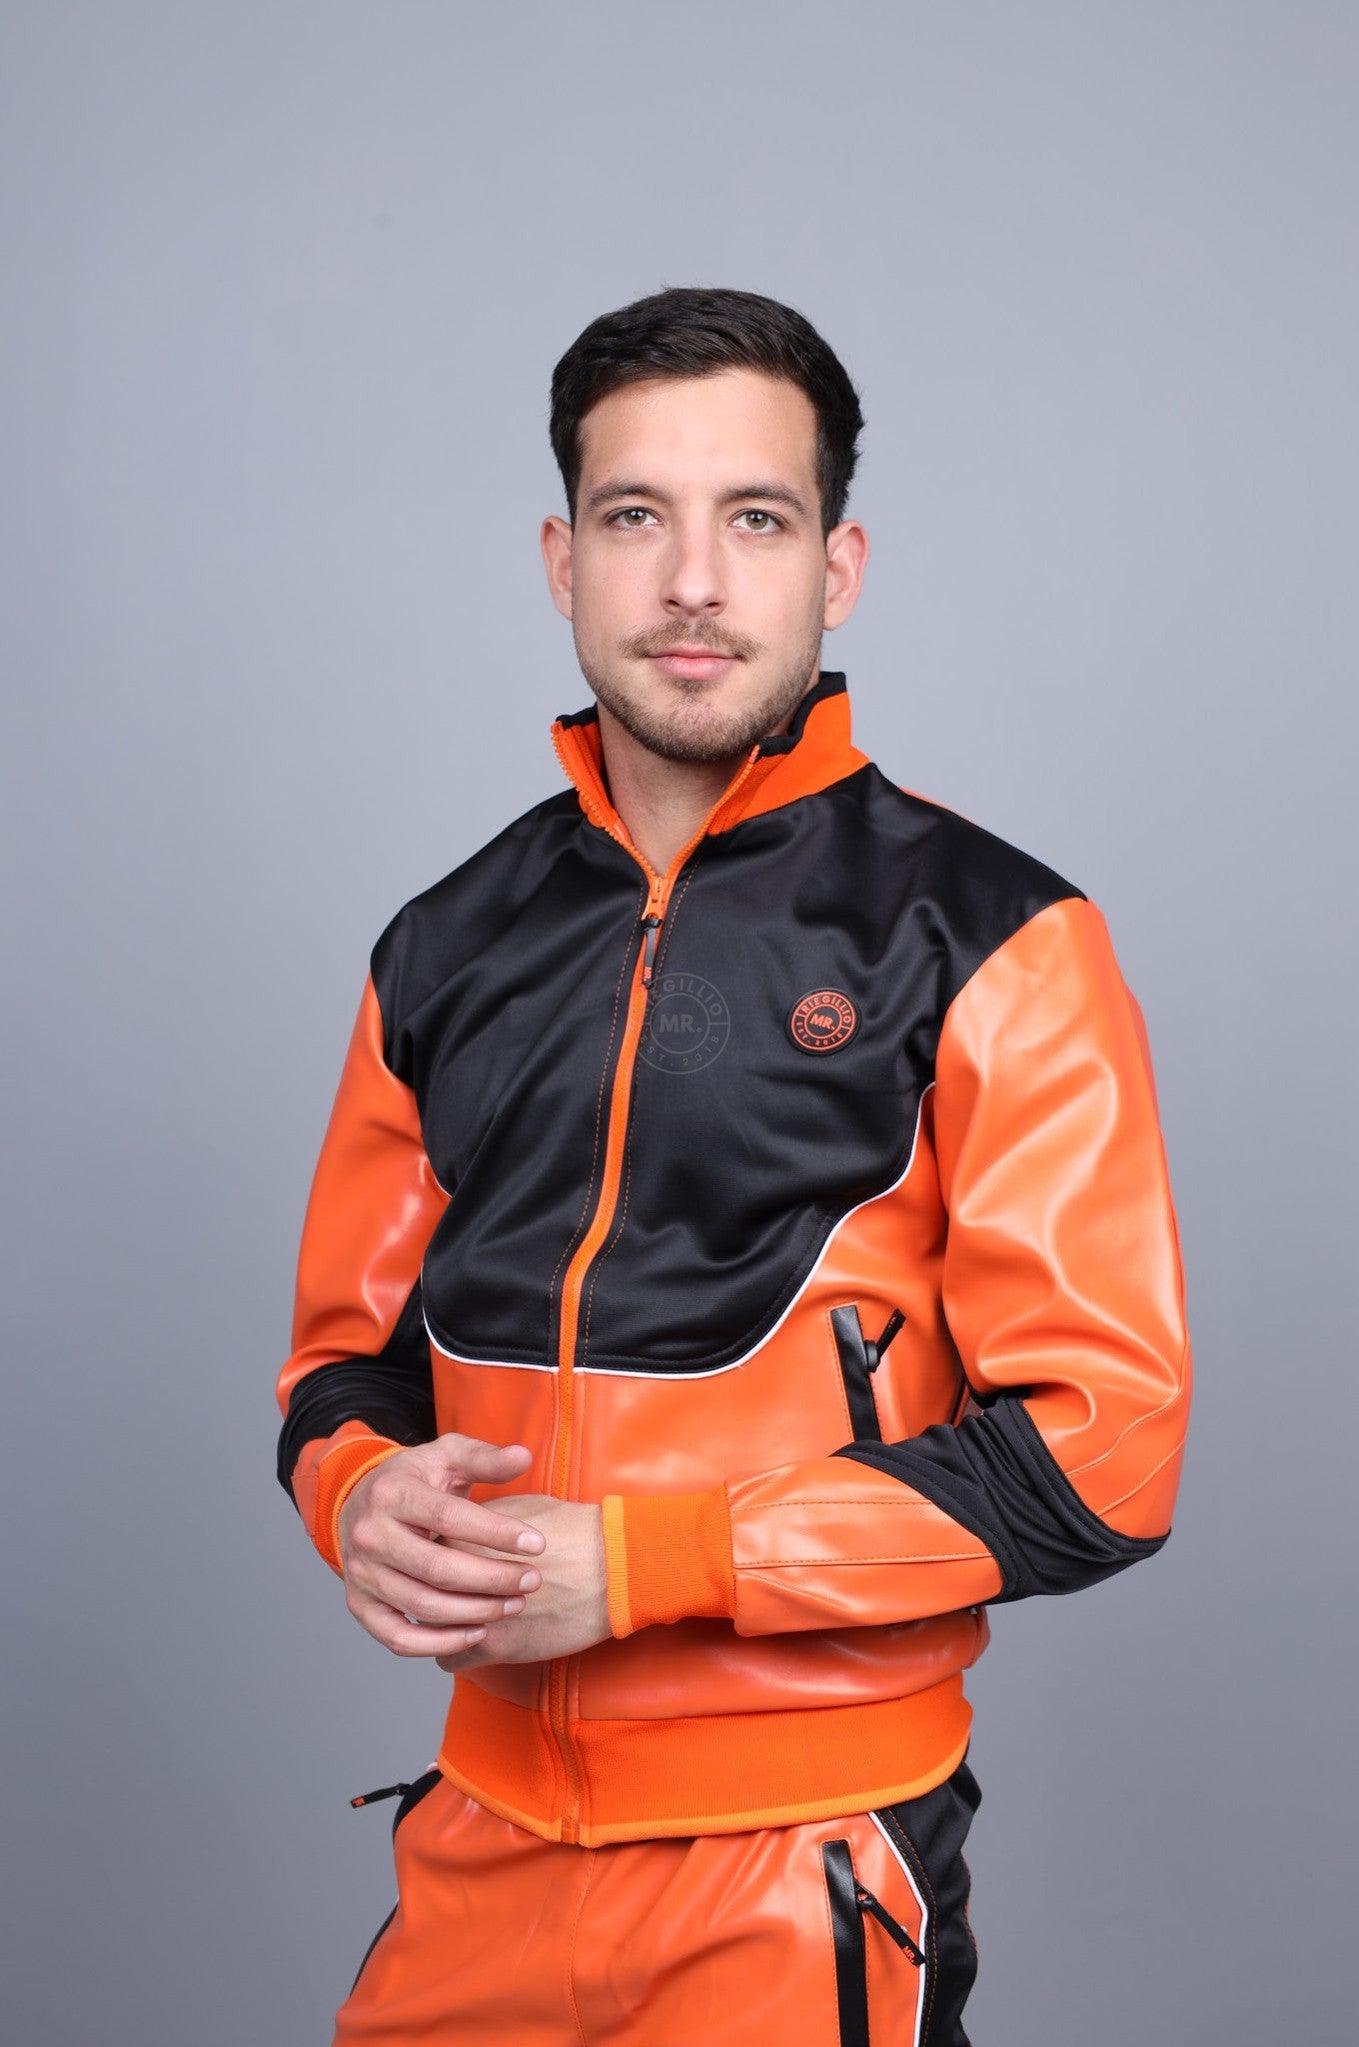 MR. 24 Tracksuit Jacket – Orange at MR. Riegillio